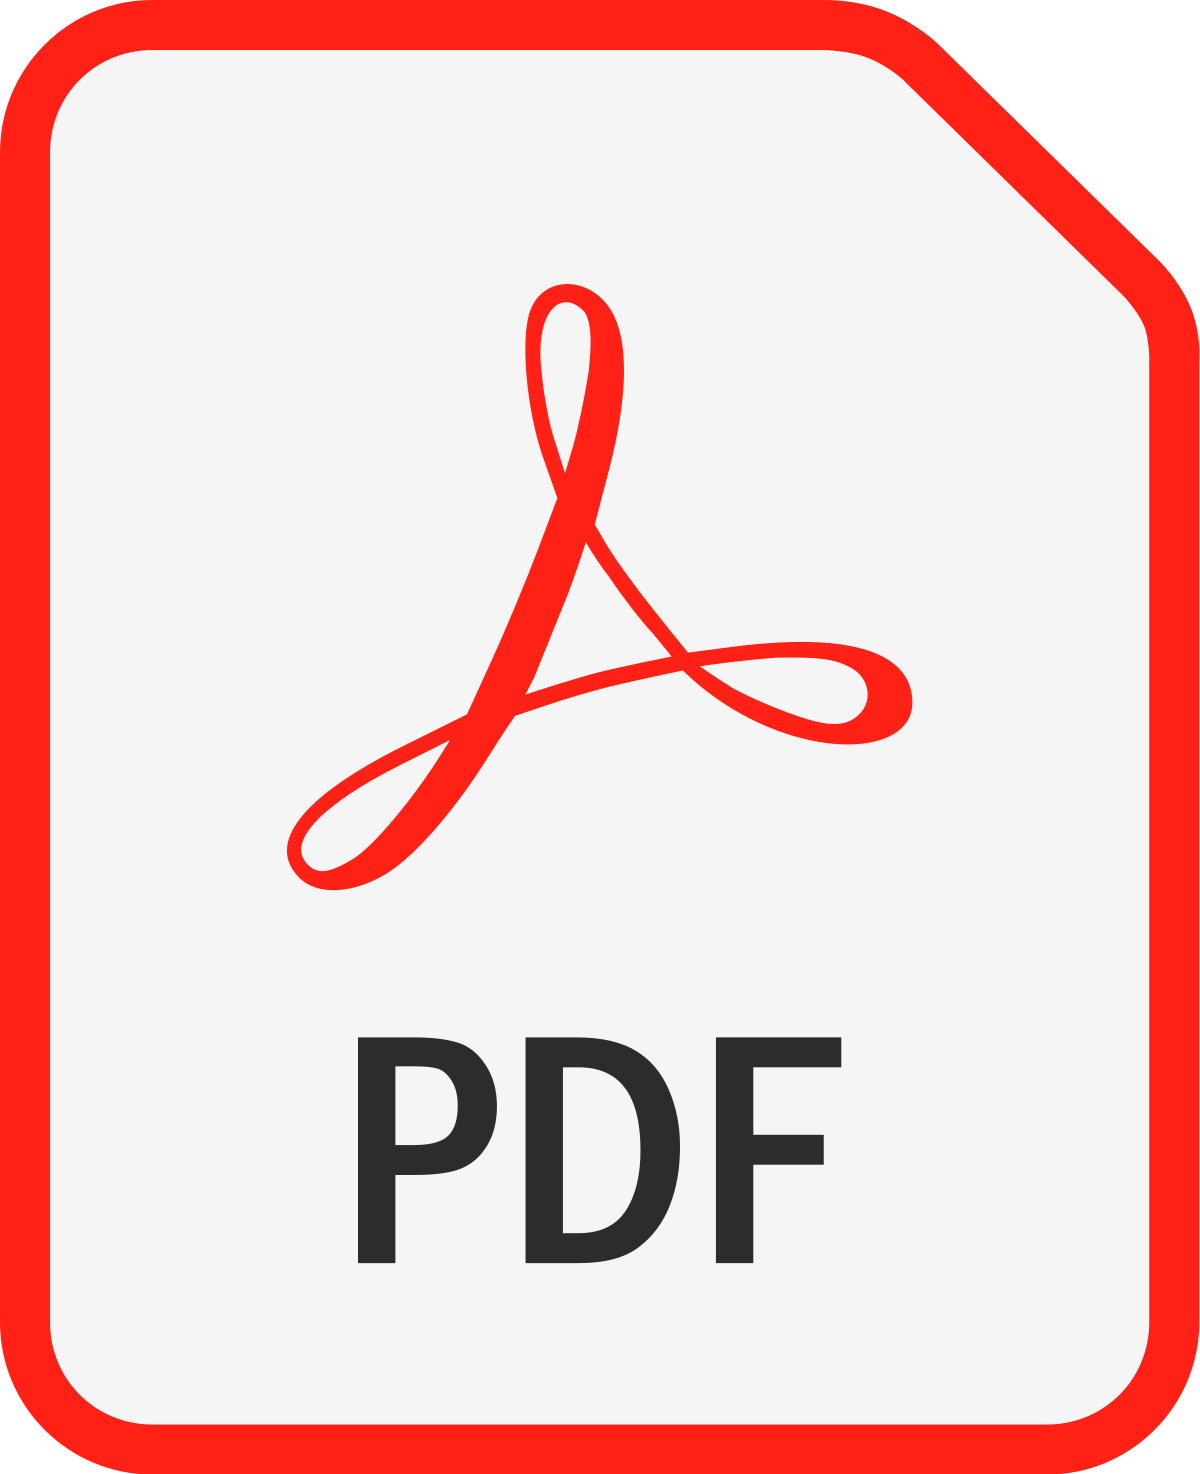 PDF translation services